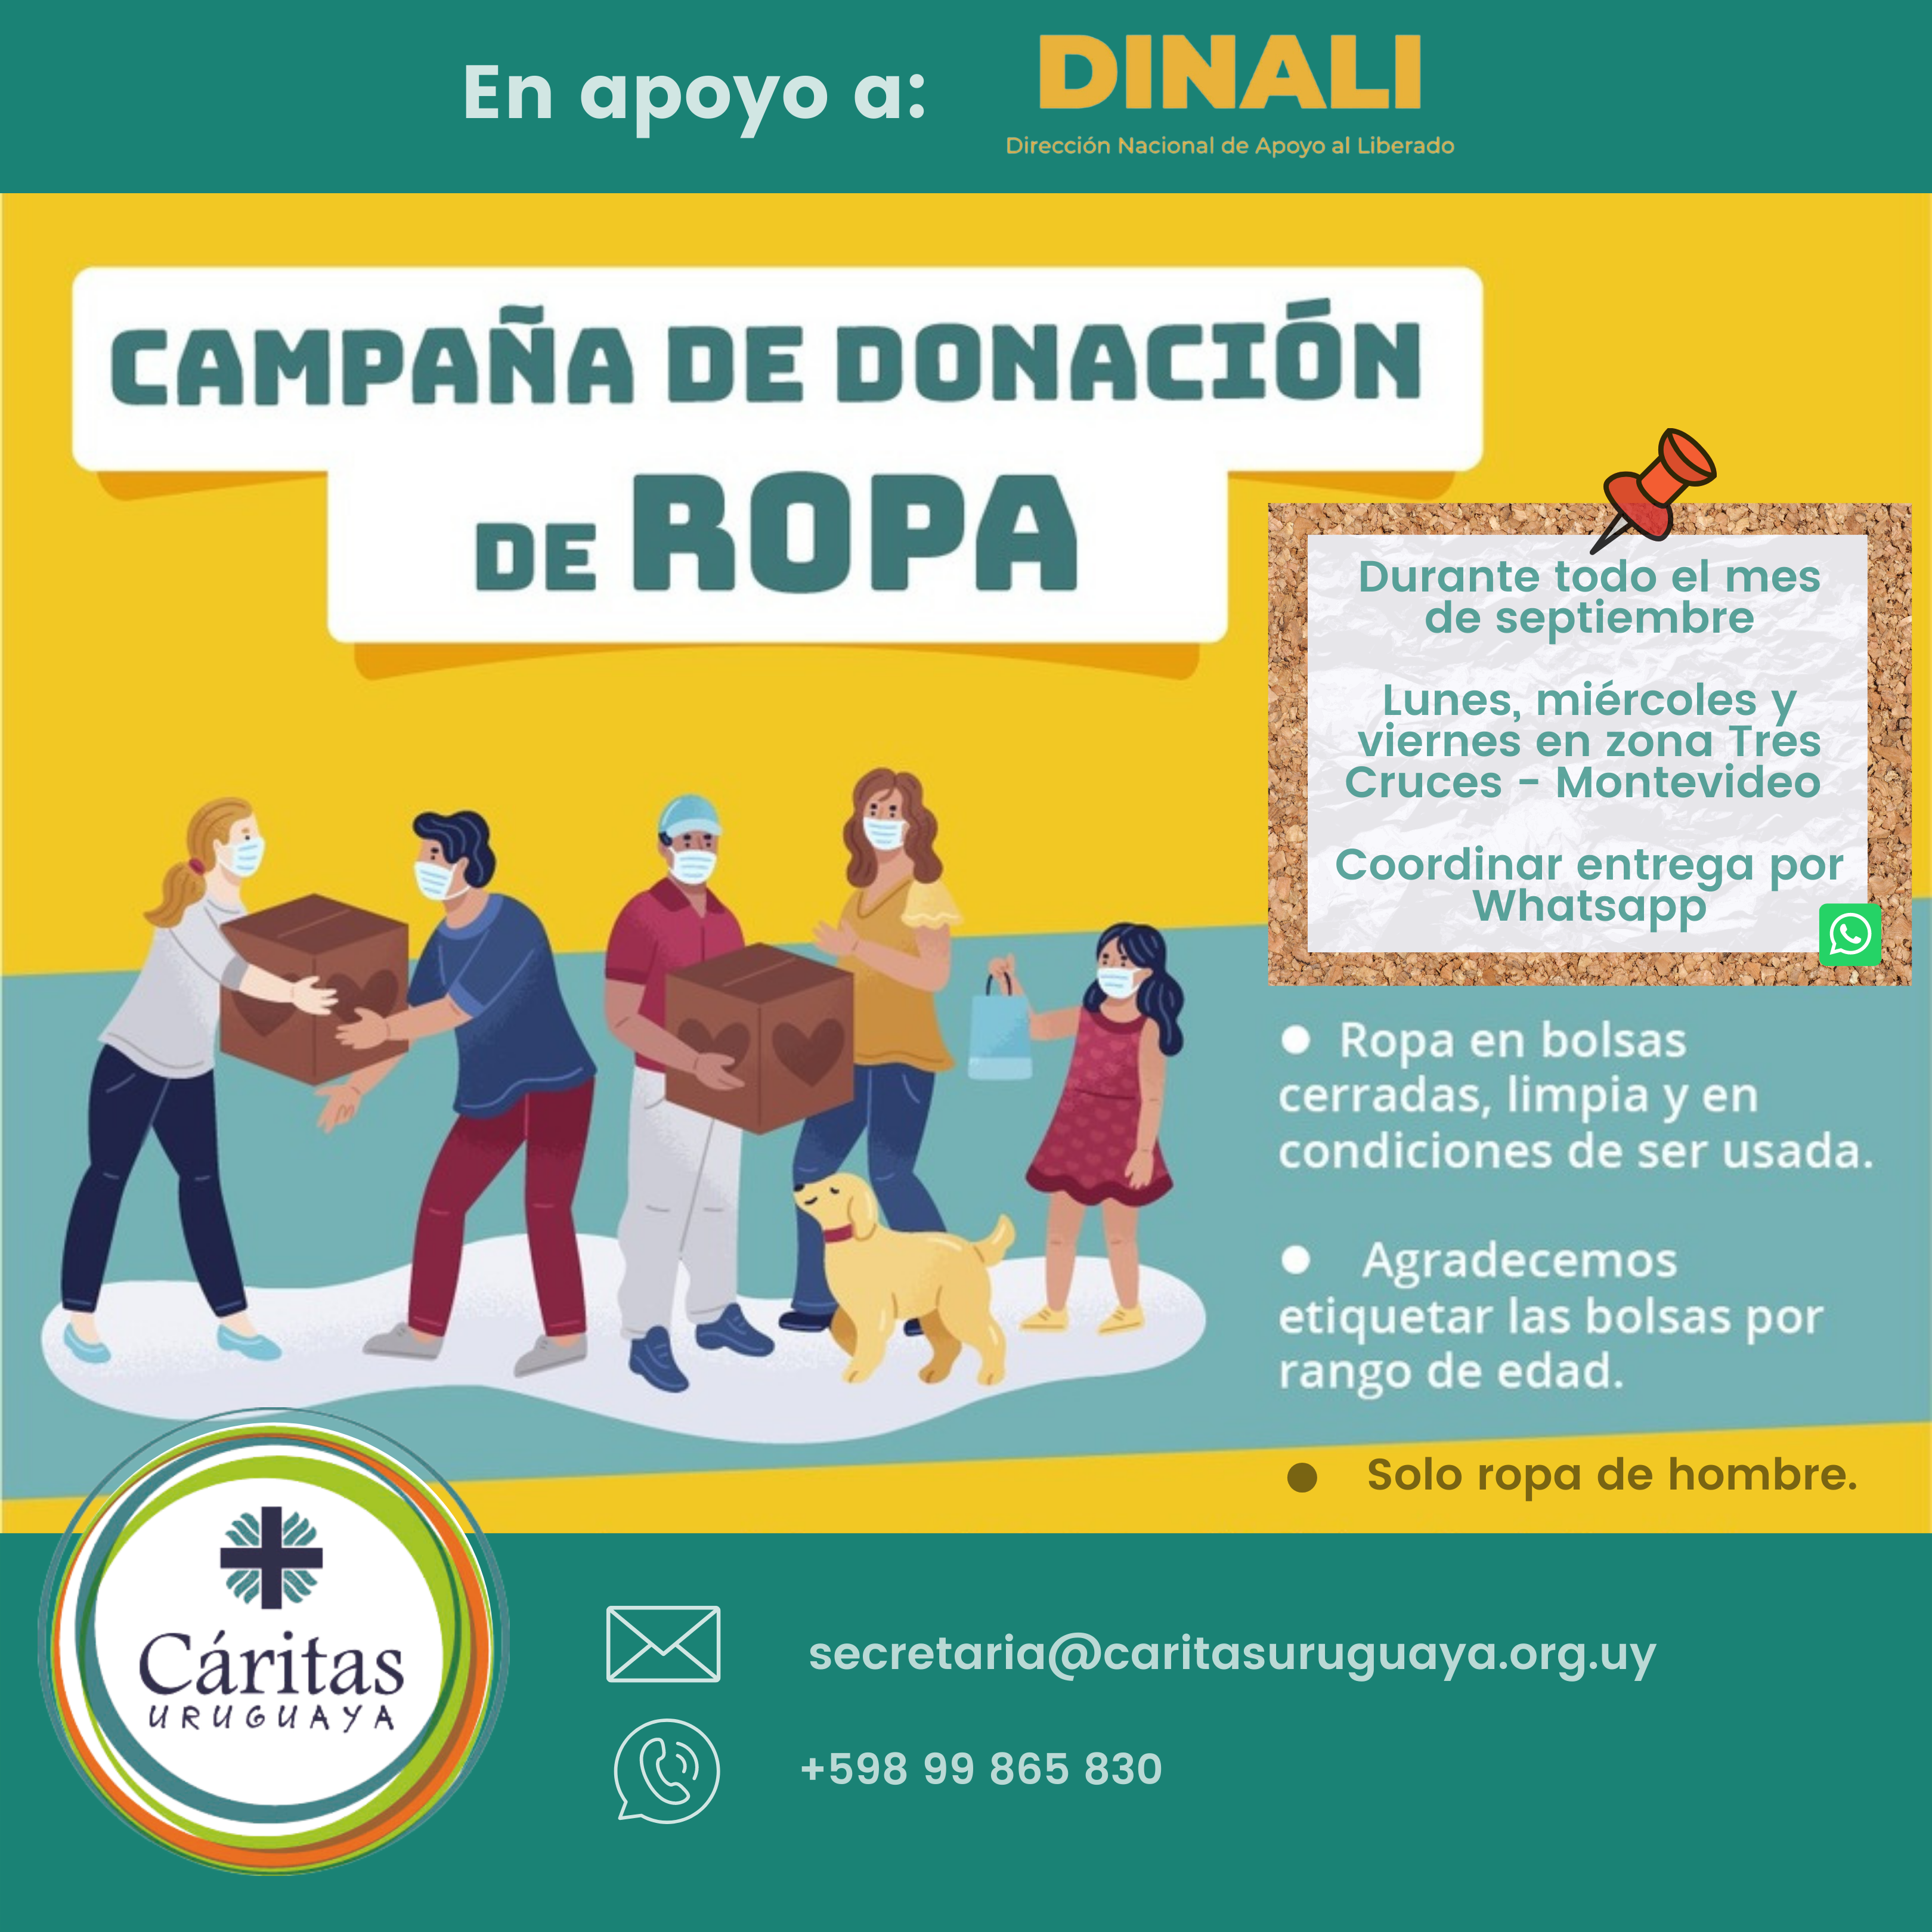 Campaña Donación de Ropa en apoyo a DINALI | Cáritas Uruguaya